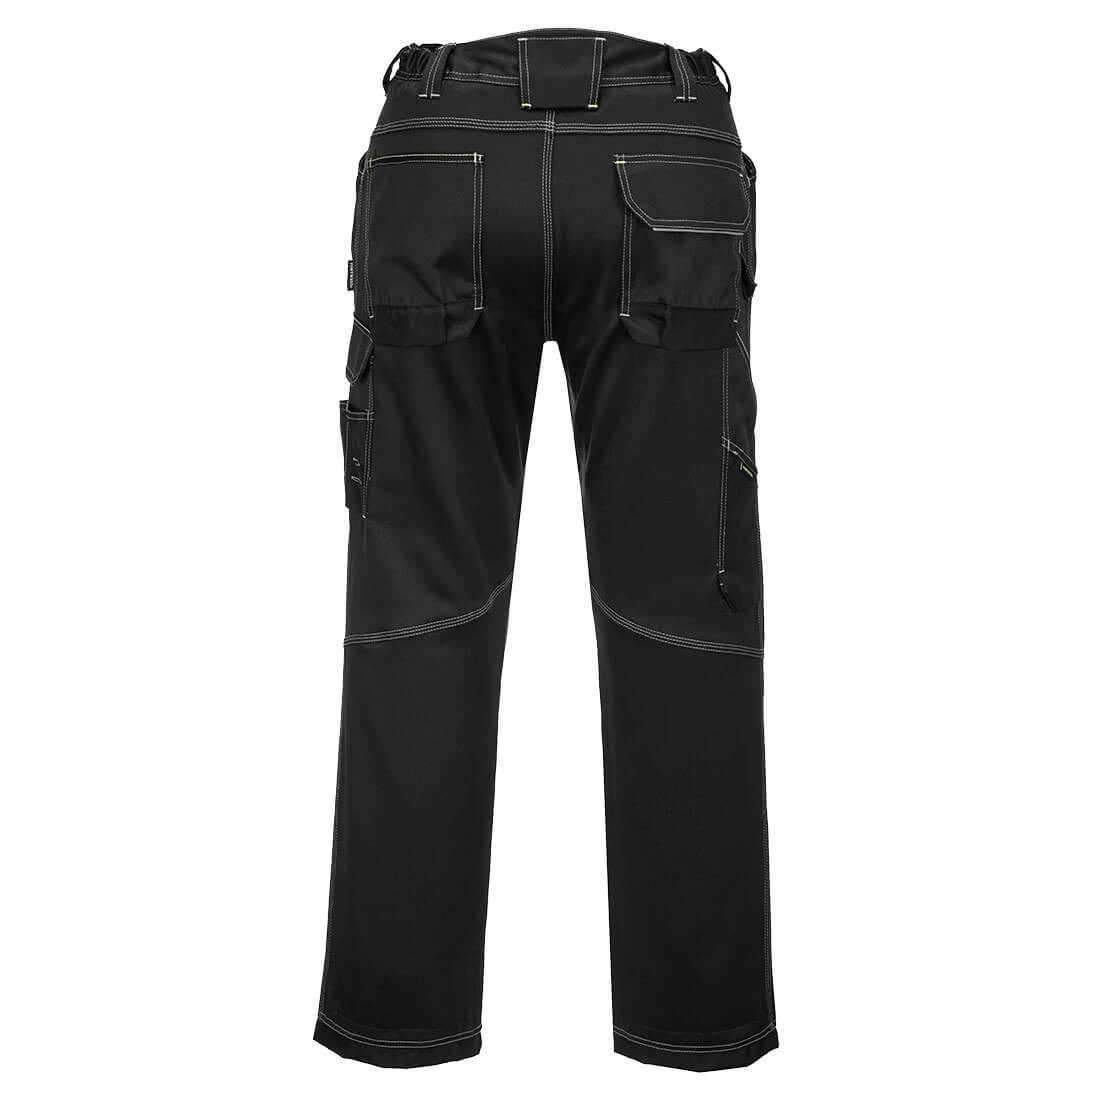 Pantalones PW3 Lined Winter Work - Ropa de protección